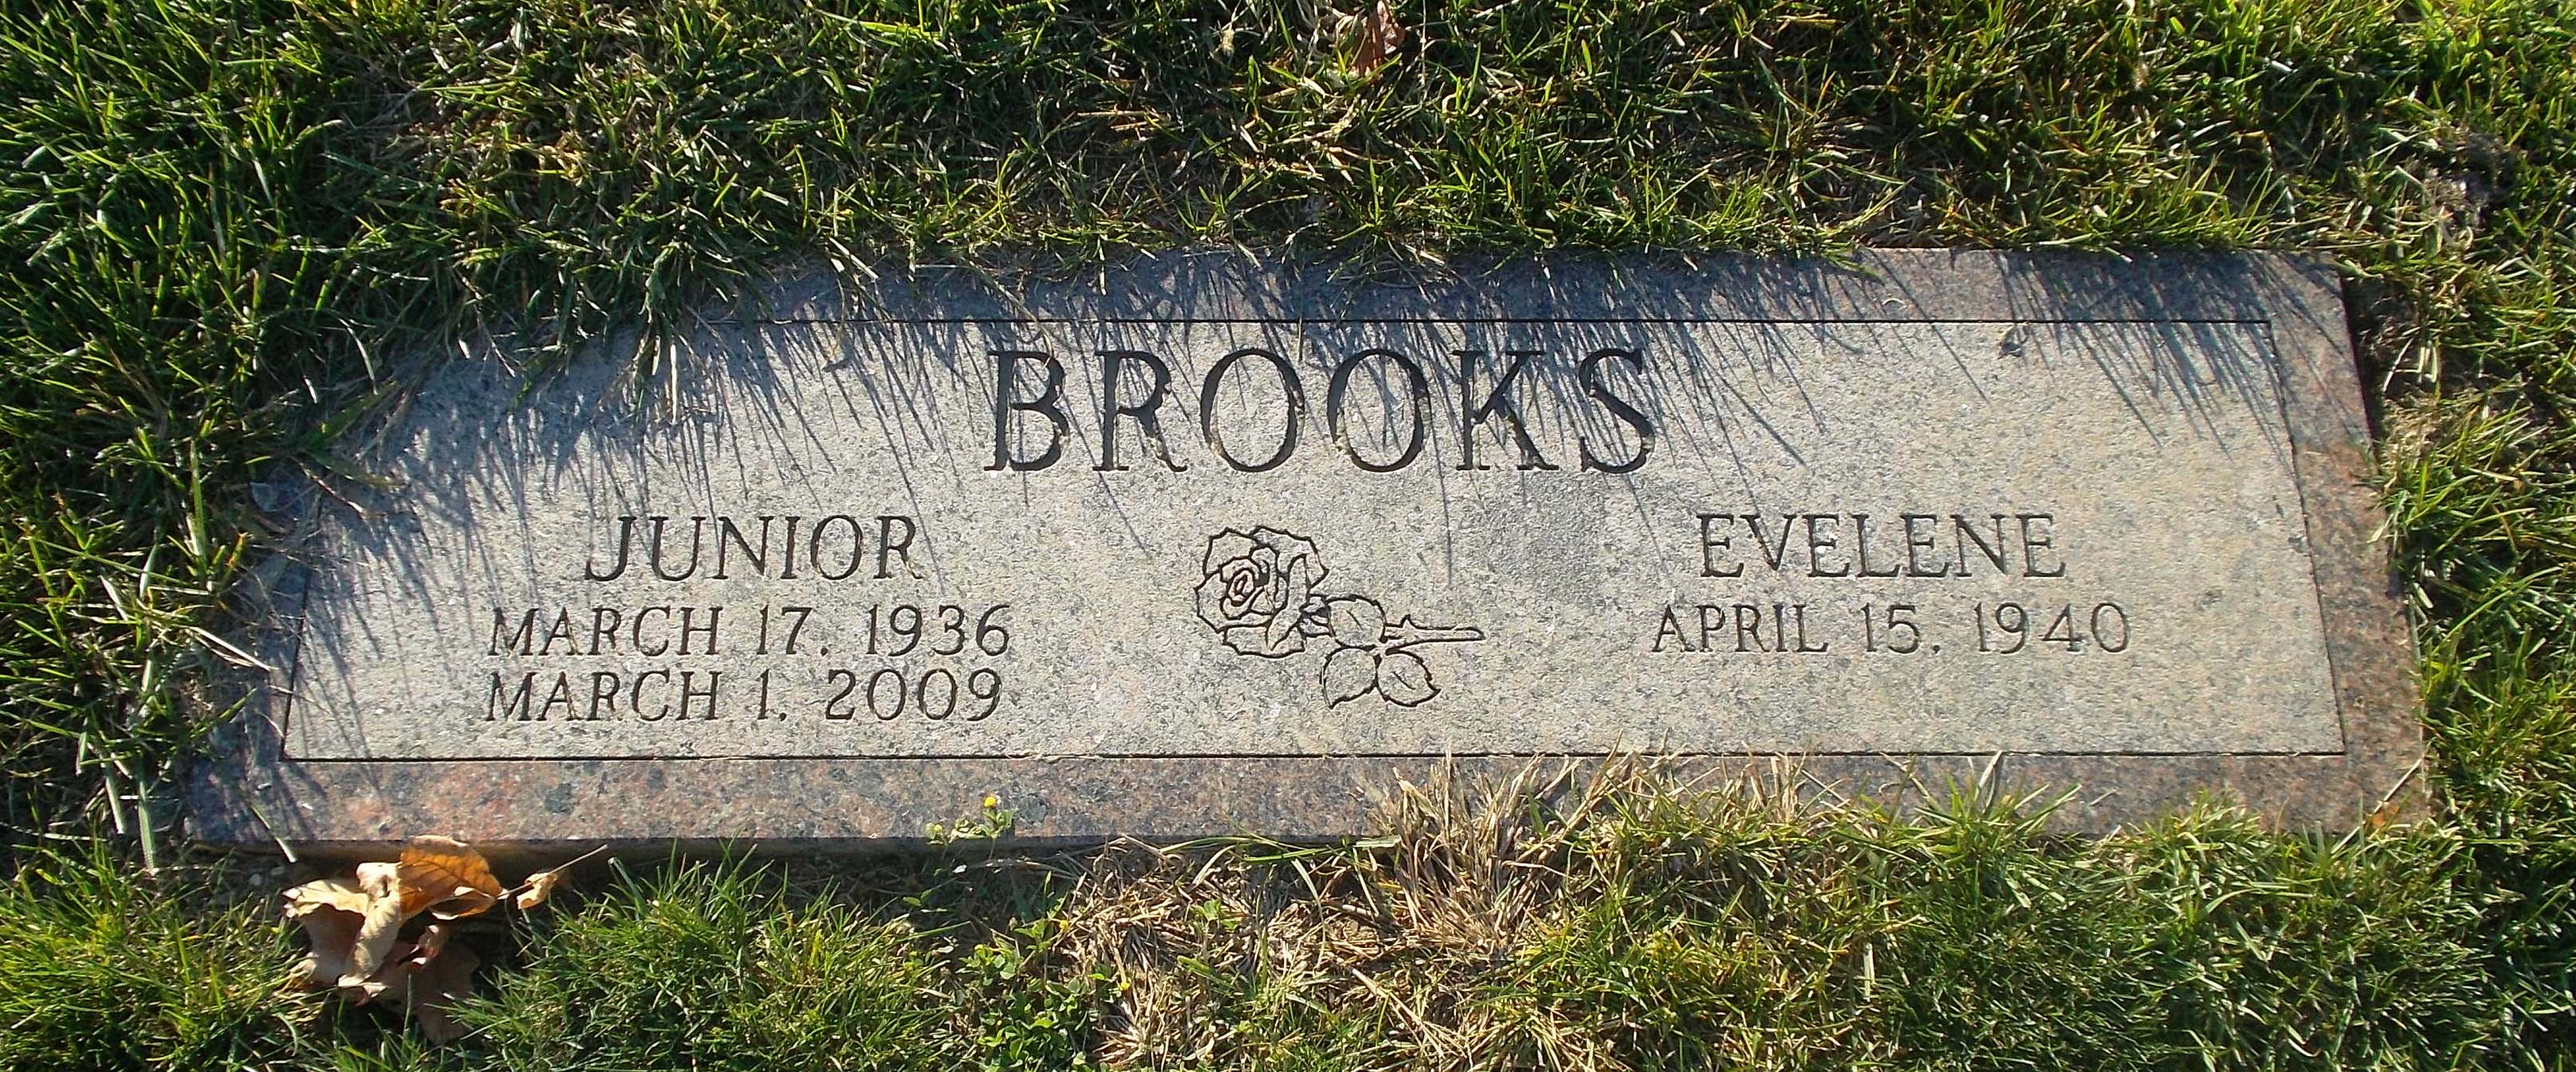 Junior Brooks